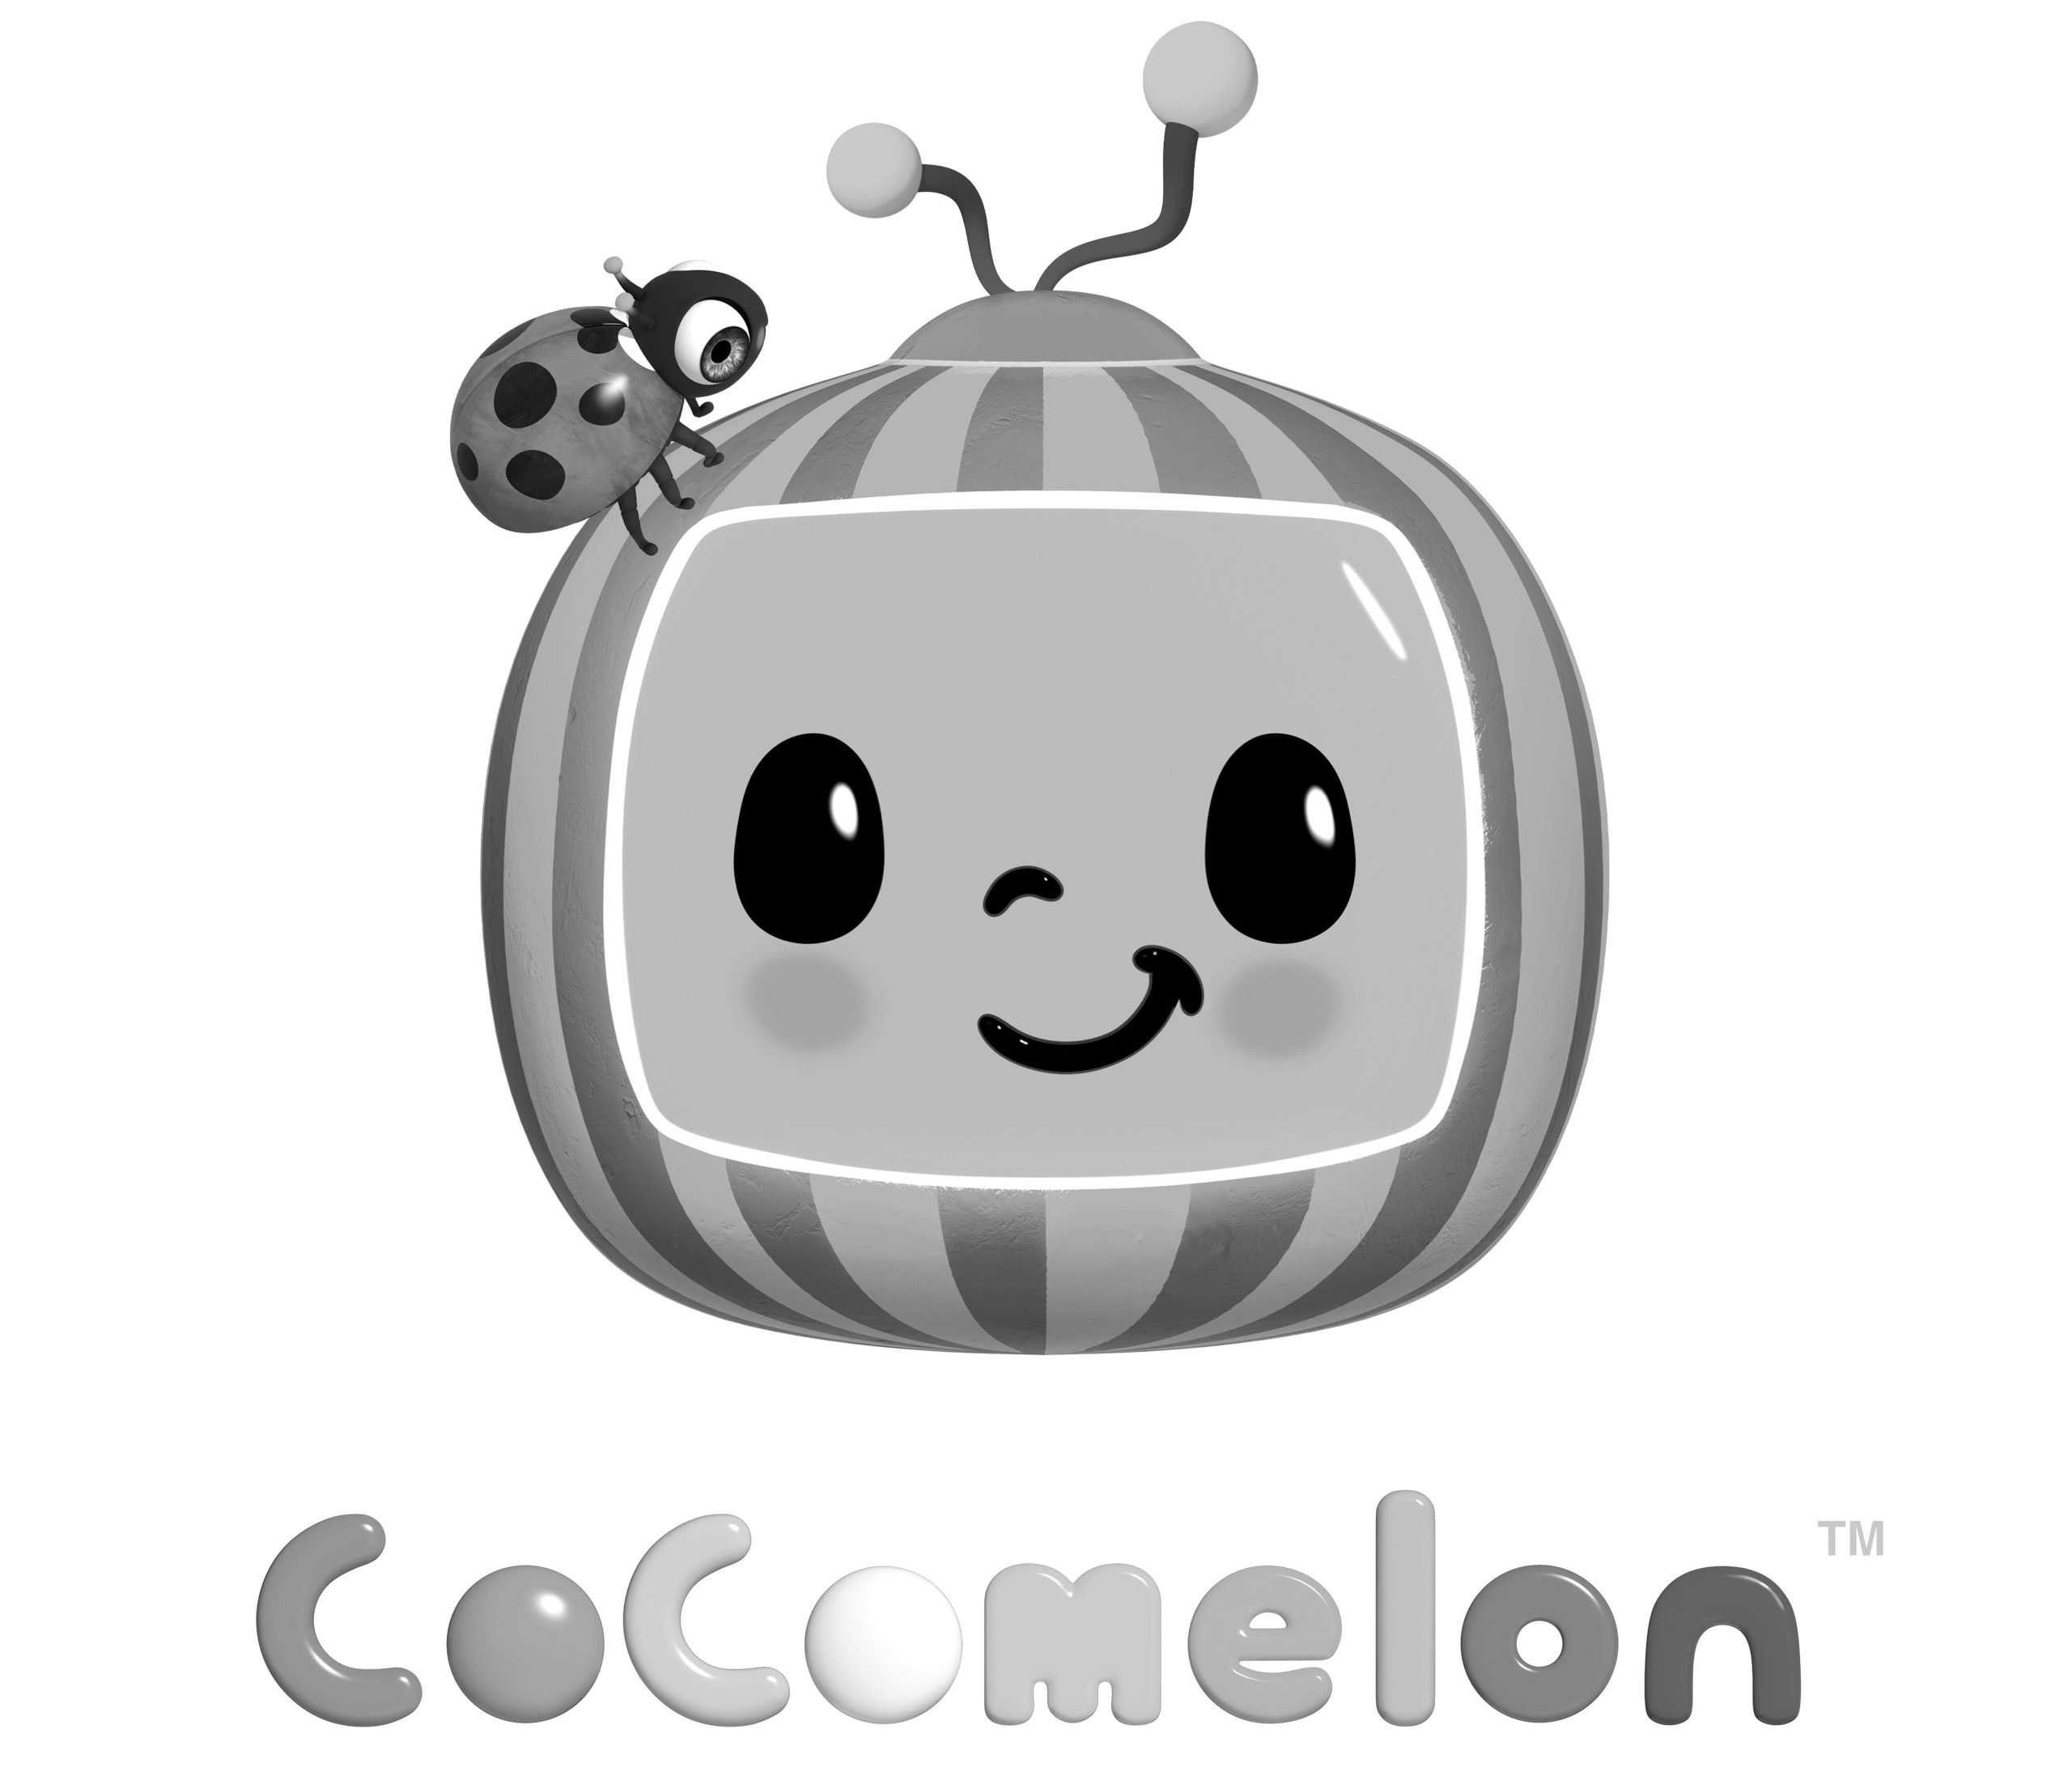 cocomelon